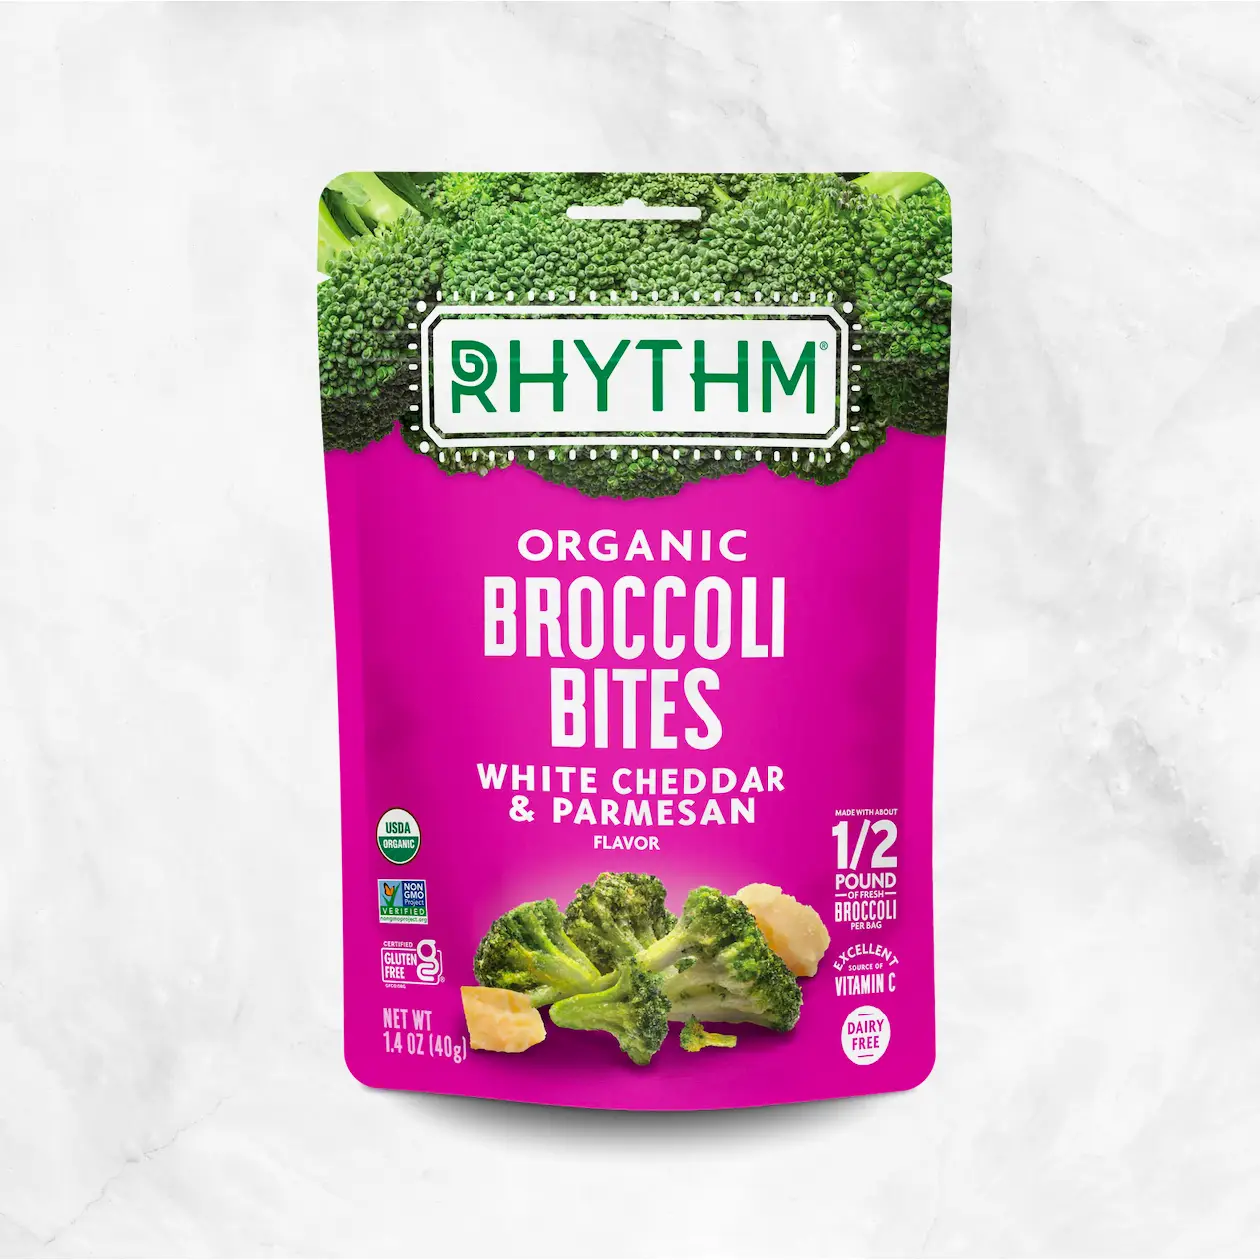 White Cheddar & Parmesan Broccoli Bites